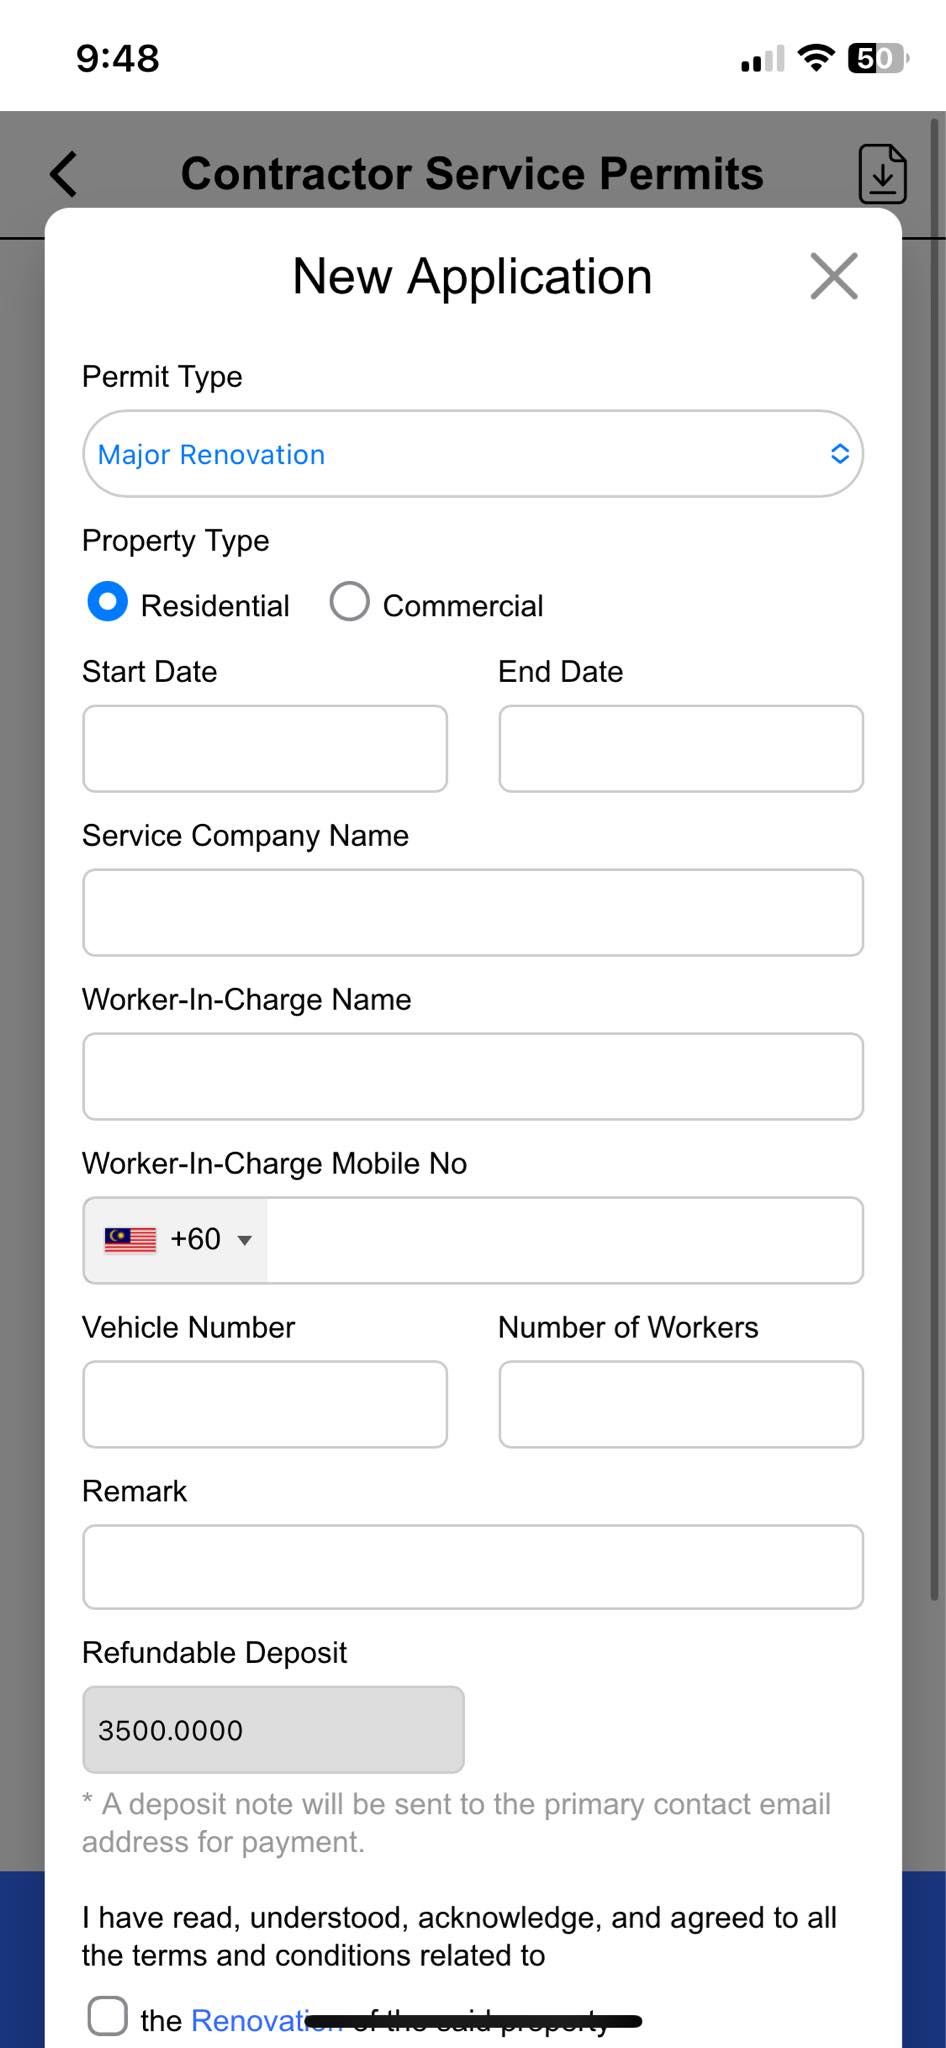 Contractor Service Permits App Screenshot